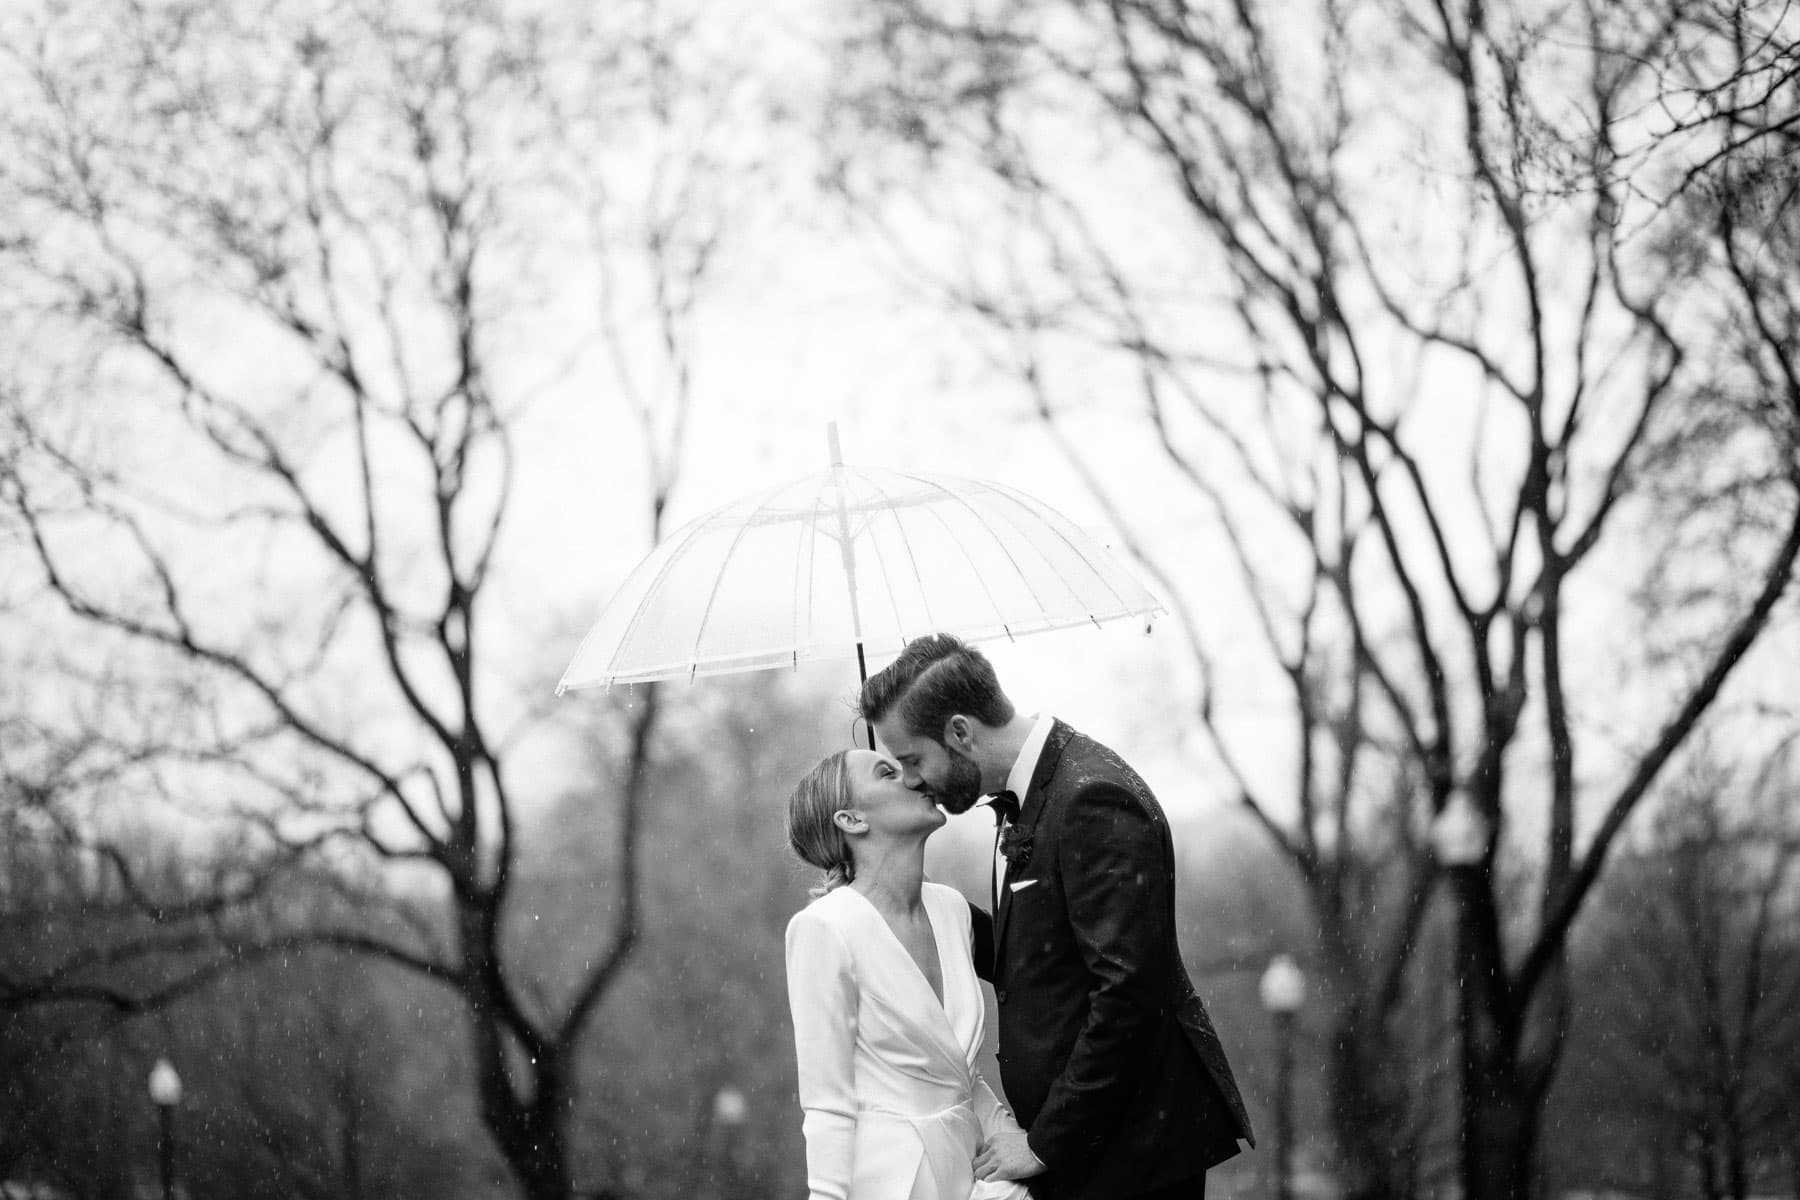 rainy wedding portraits in Boston Common